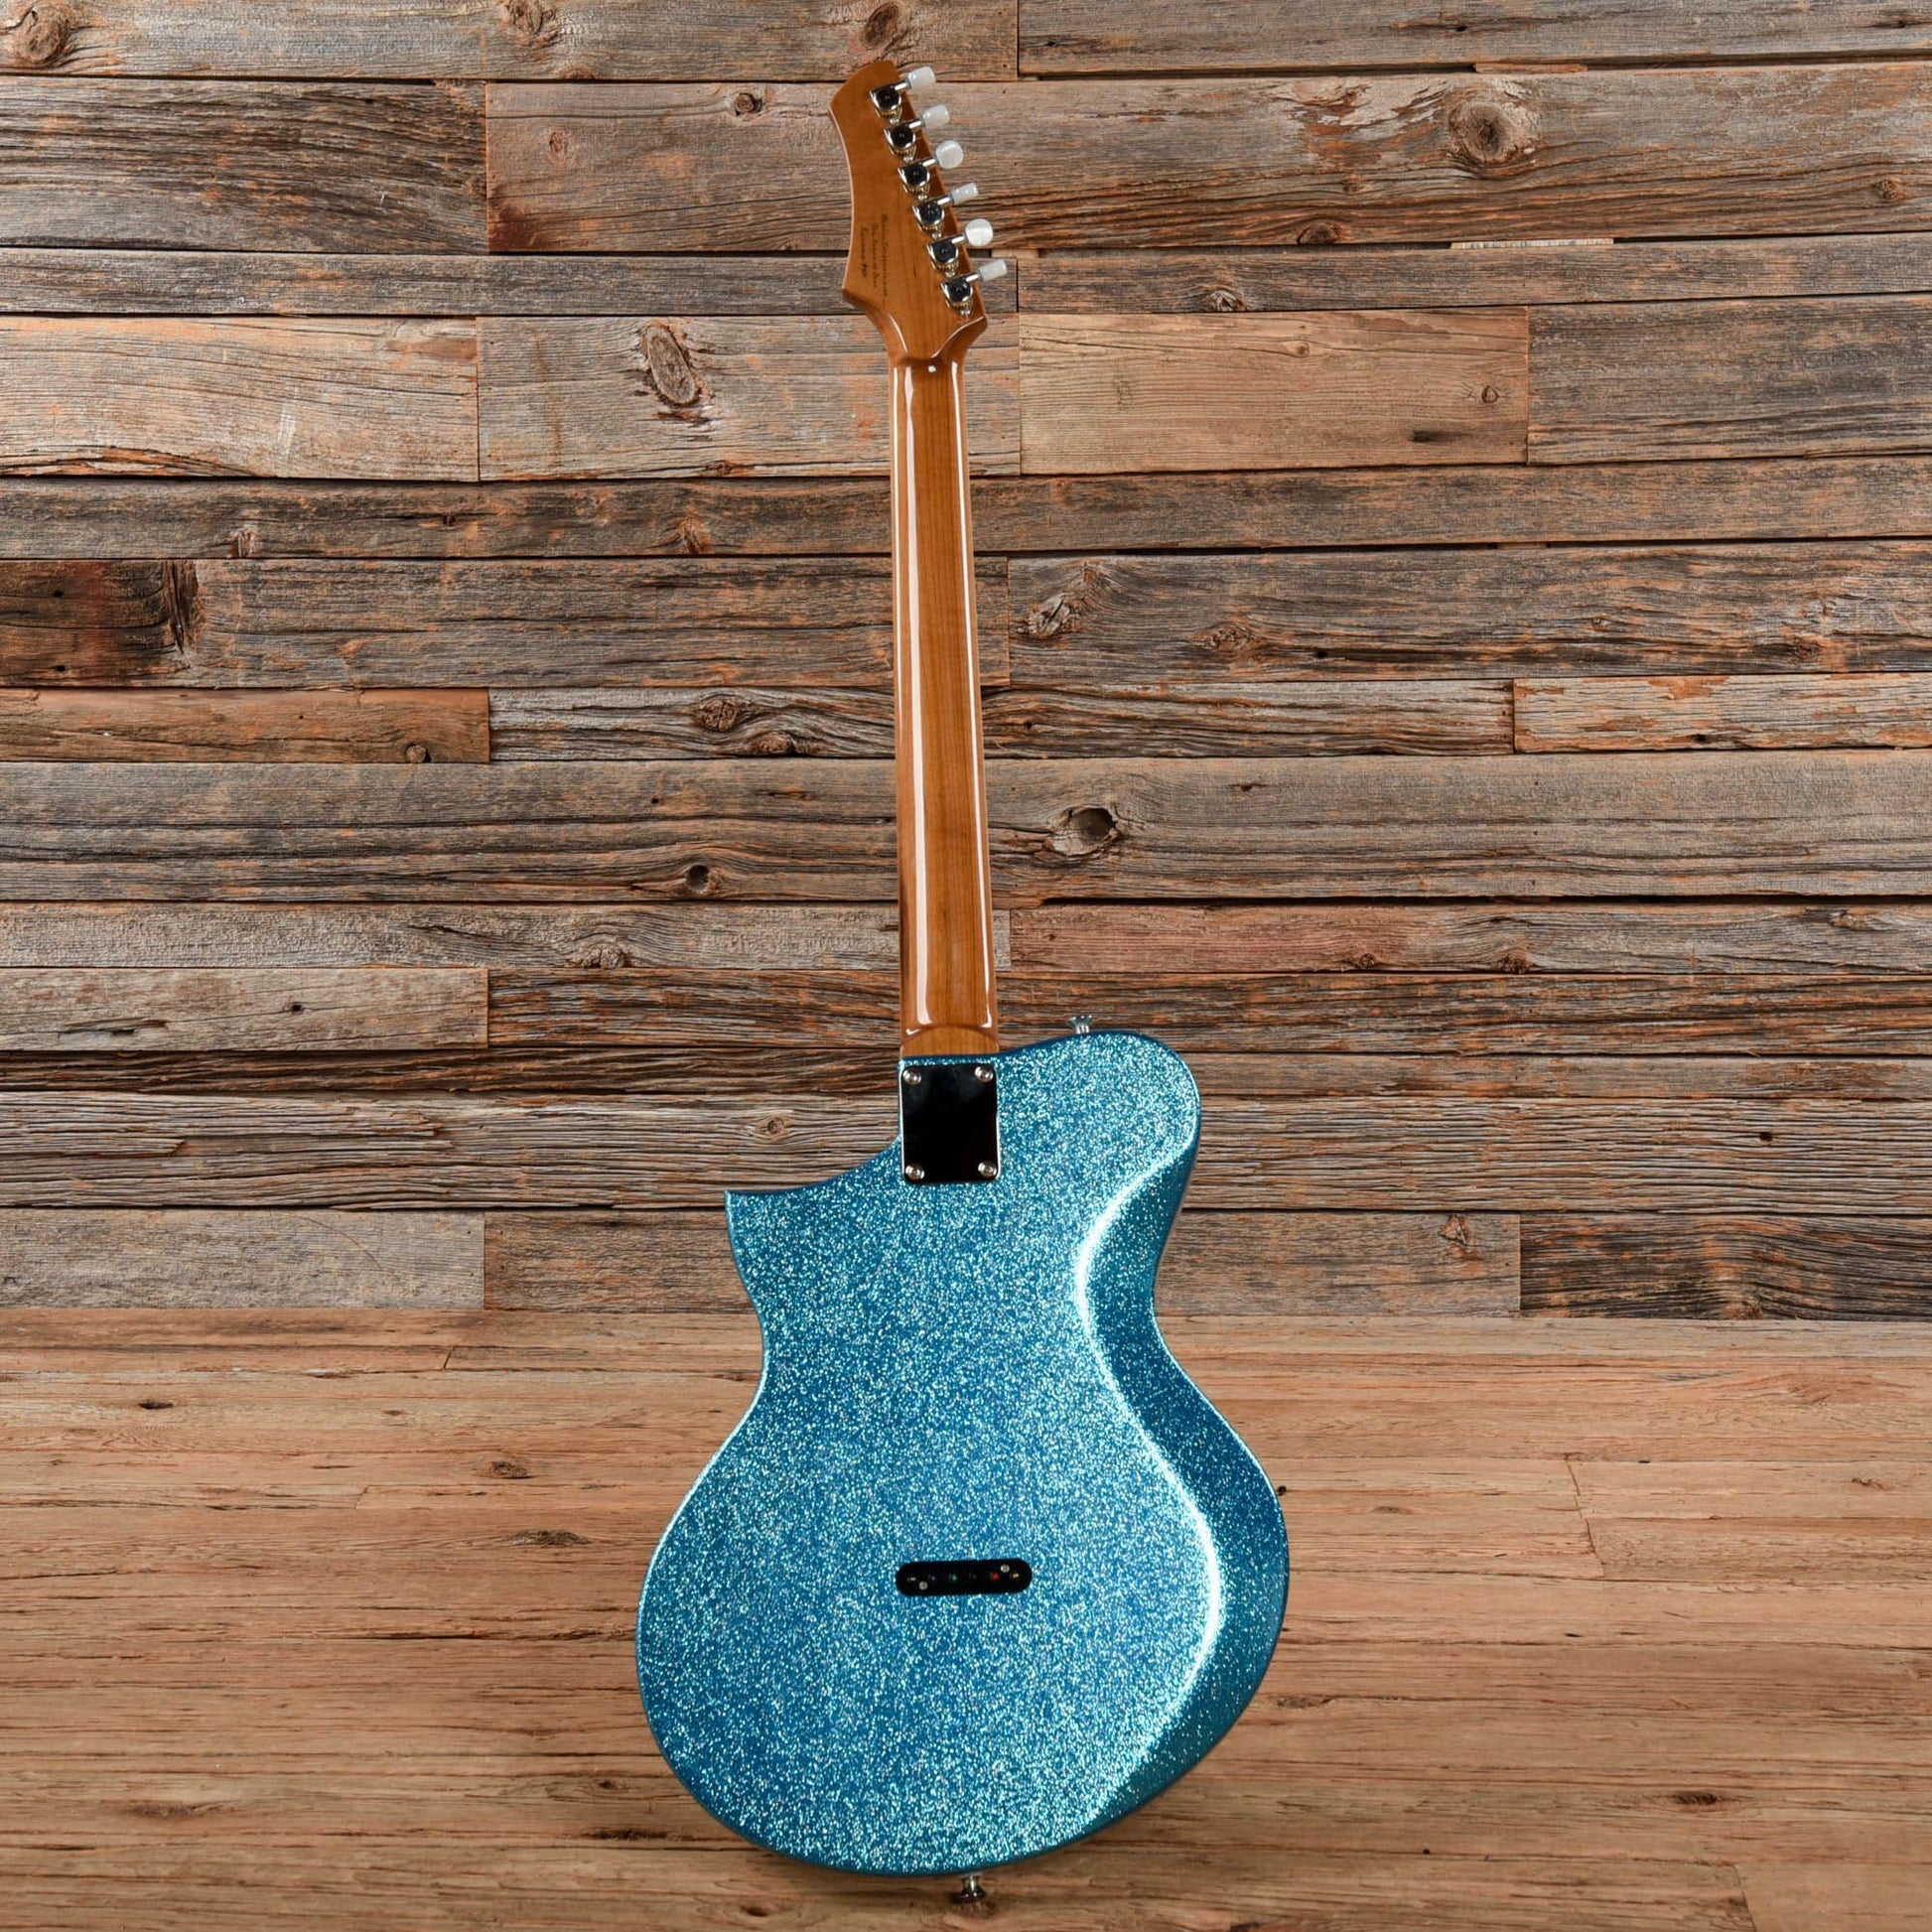 Kauer Korona Sky Blue Flake Electric Guitars / Solid Body